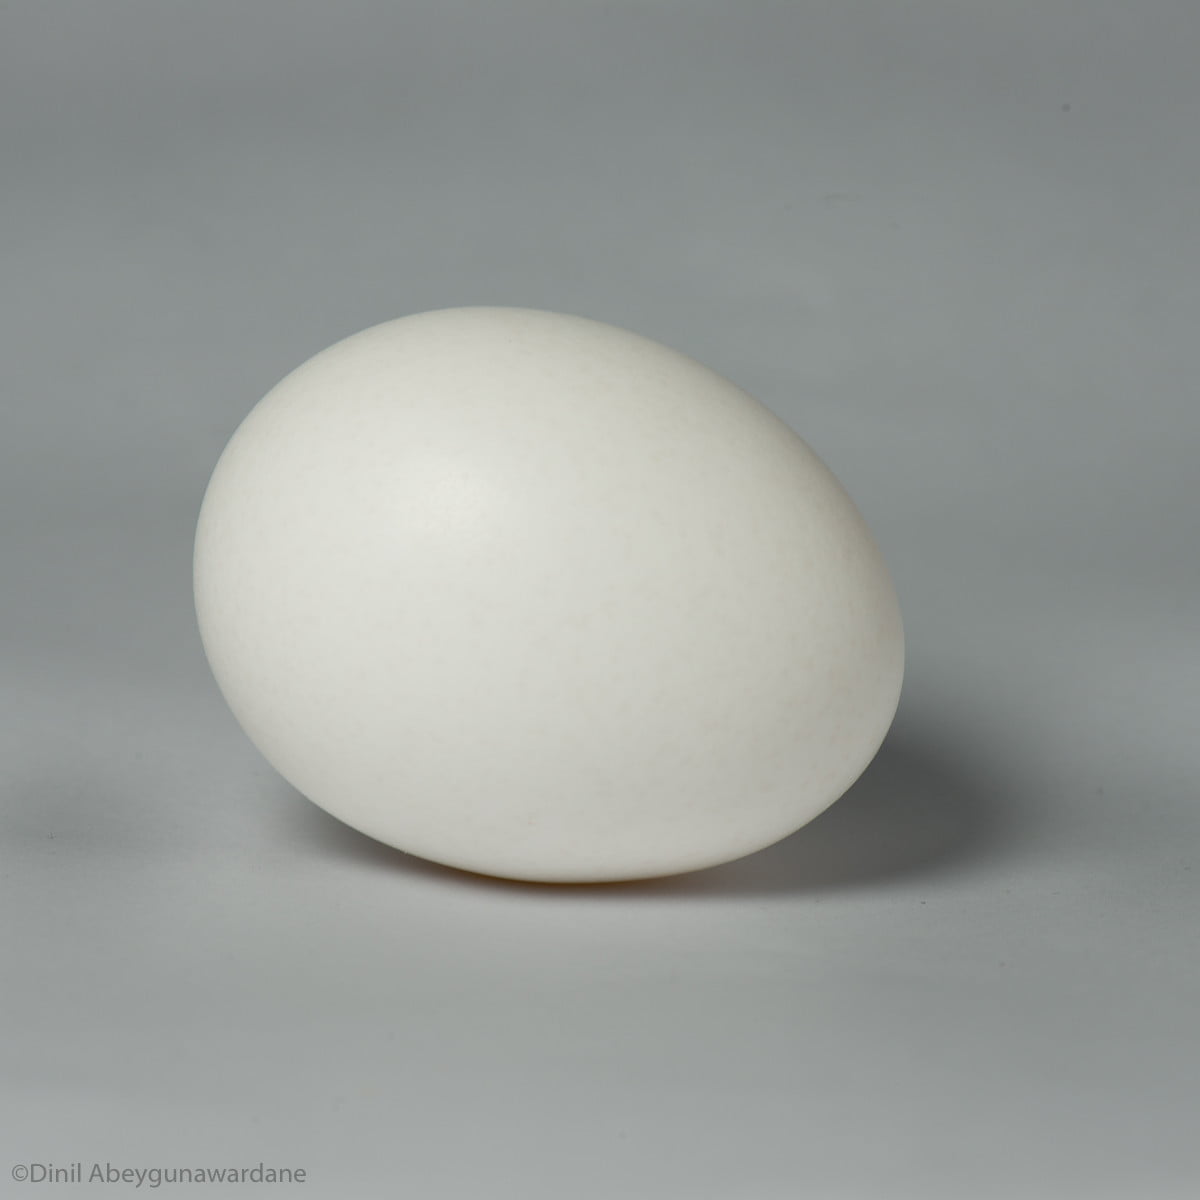 White egg with flatter light